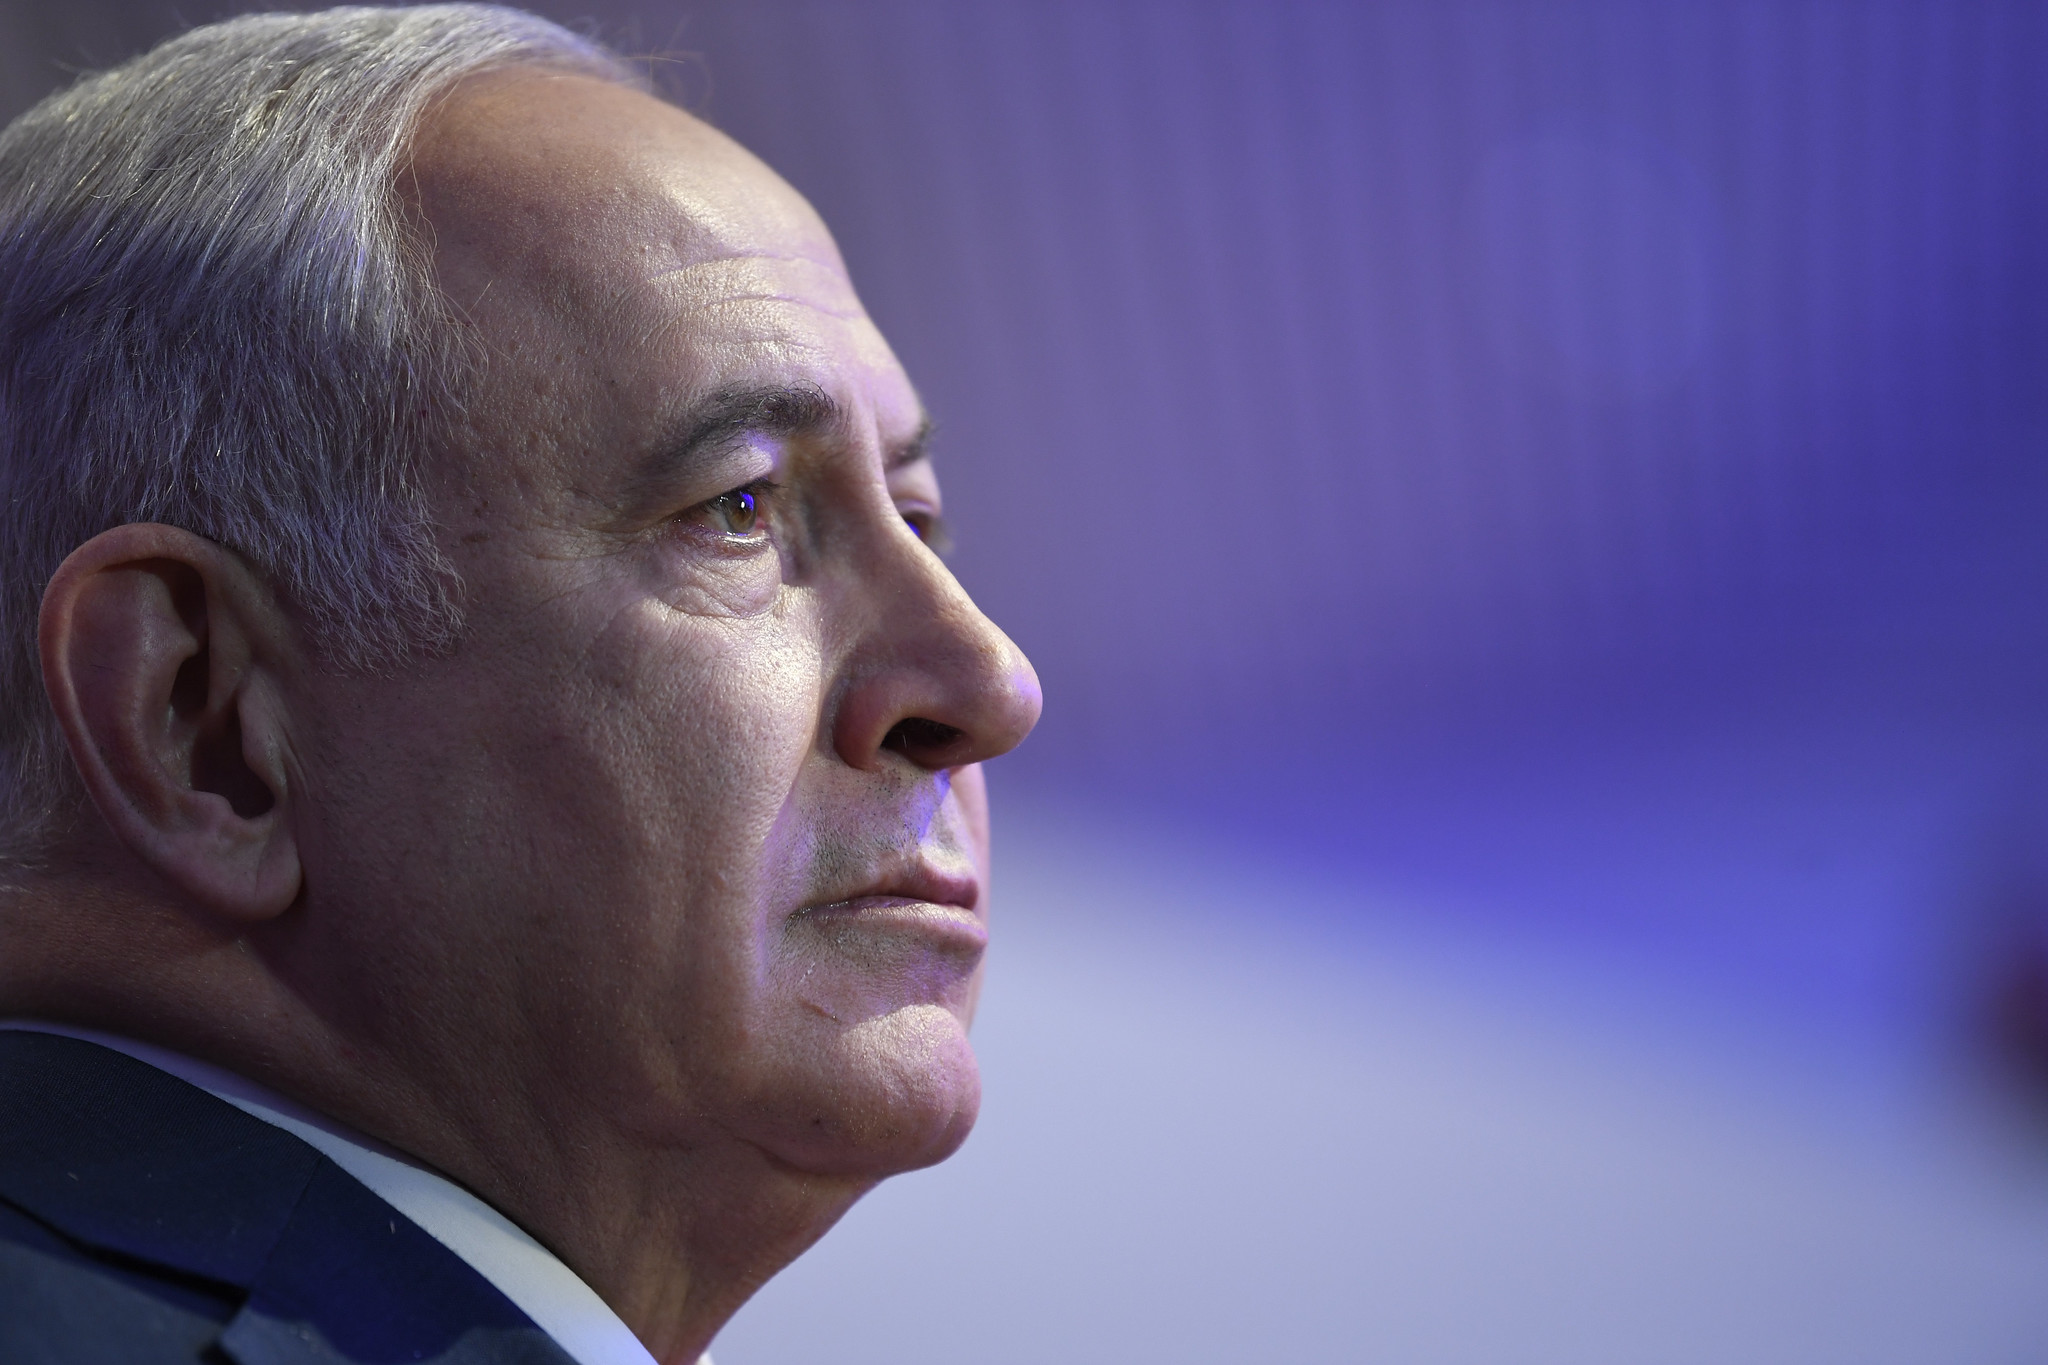 Netanyahu Image Forum économique mondial Flickr